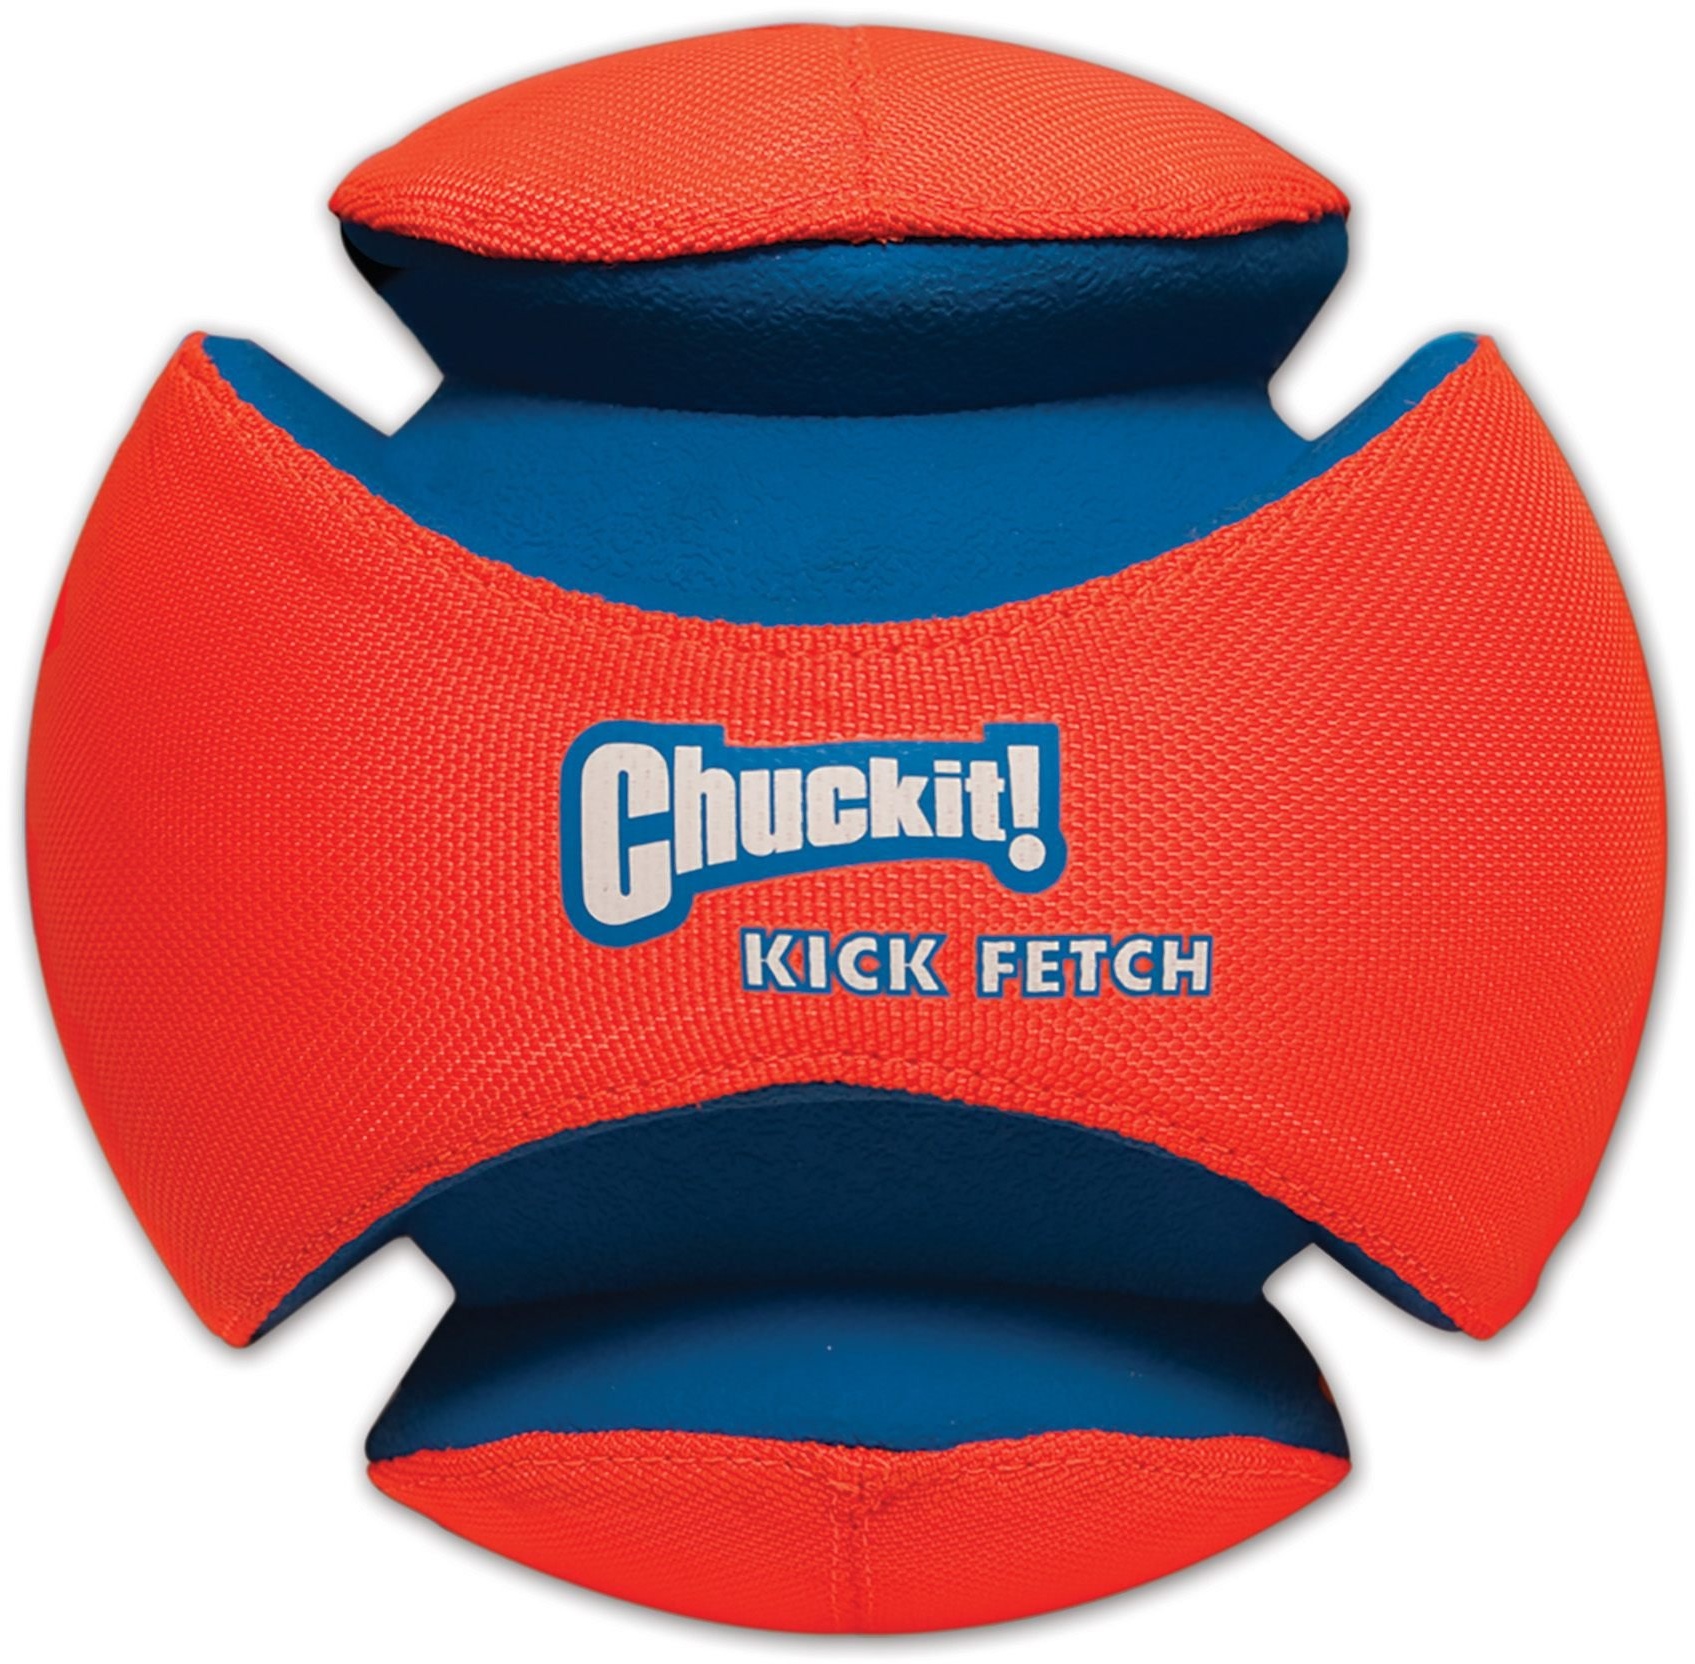 Chuckit! CH251101 Kick Fetch Small